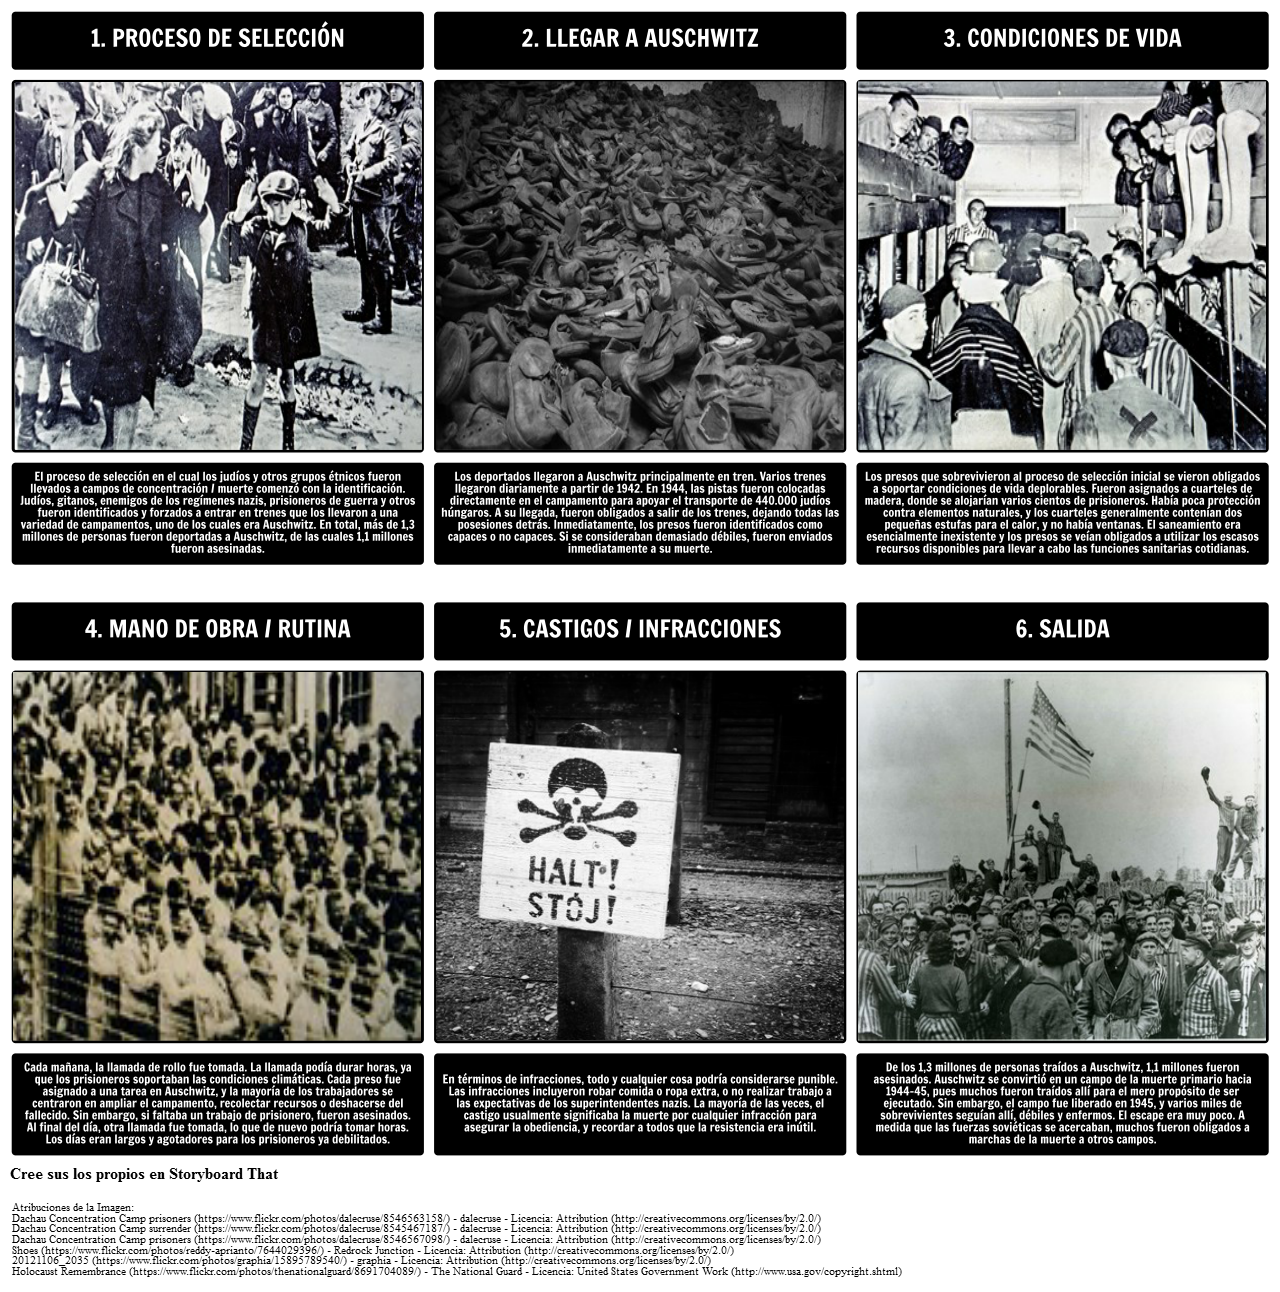 Eventos Que Llevaron Al Holocausto Planes De Lección Del Holocausto